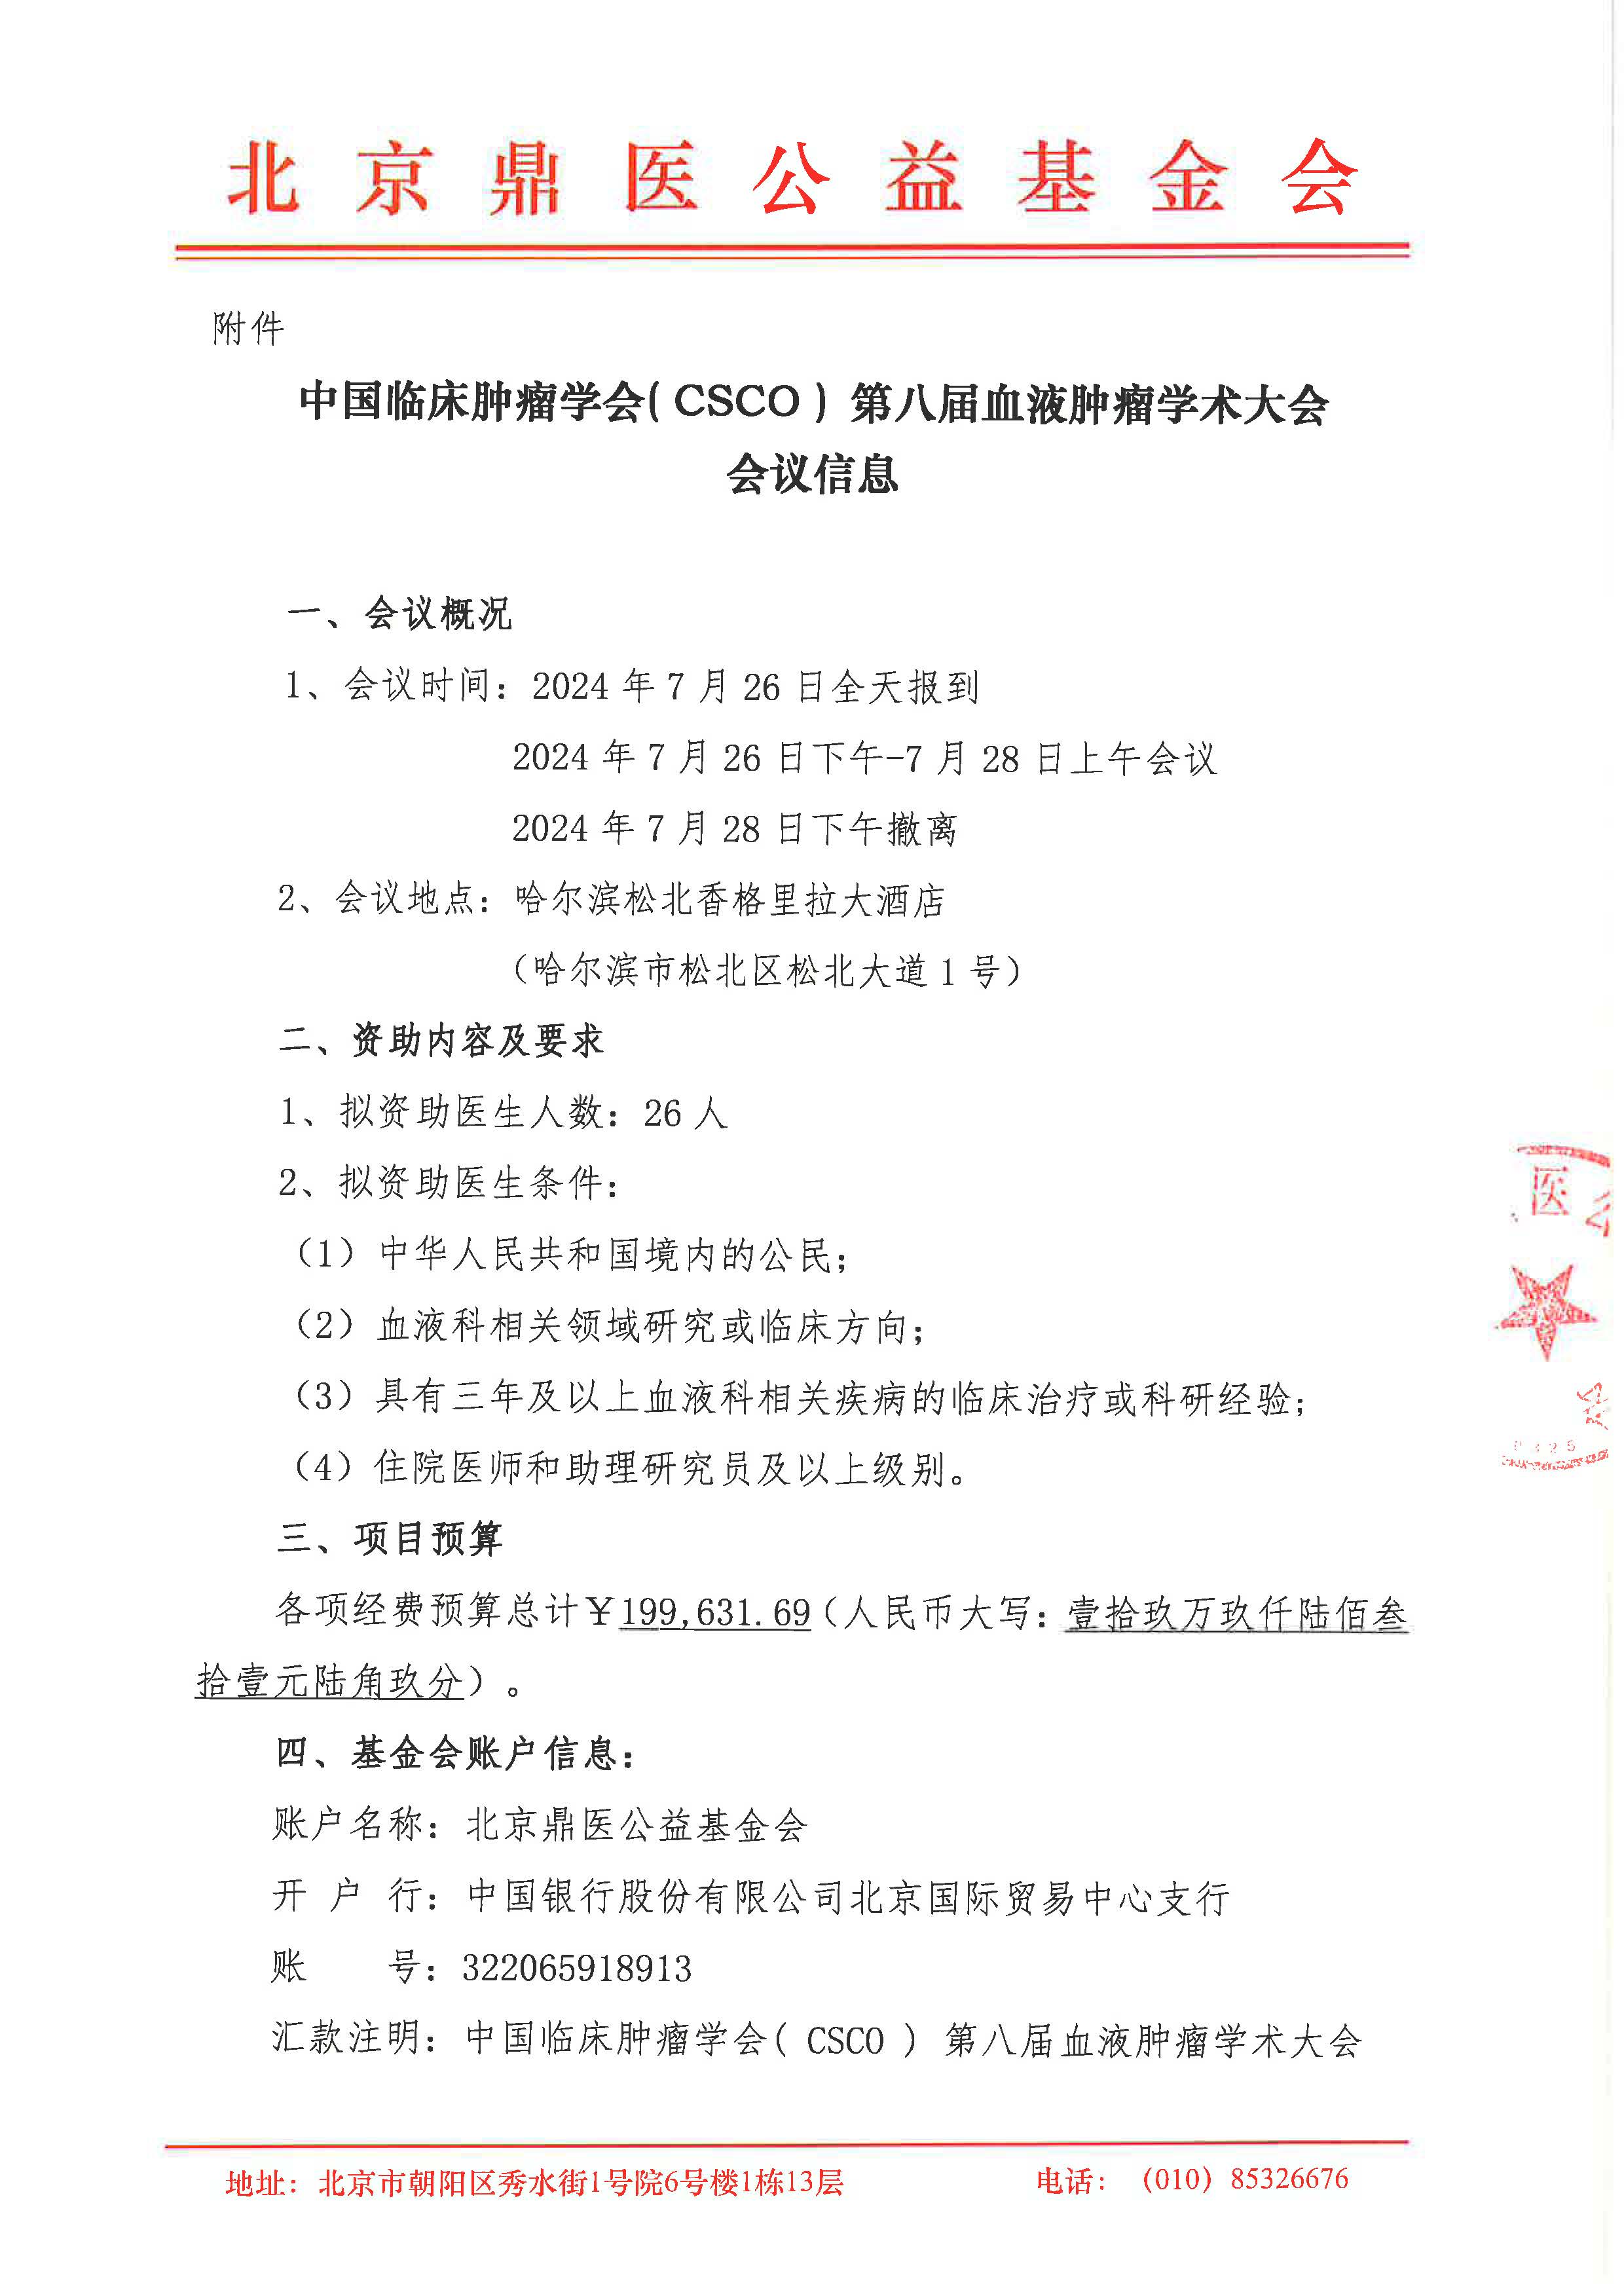 中国临床肿瘤学会( CSCO ) 第八届血液肿瘤学术大会-支持函_页面_2.jpg